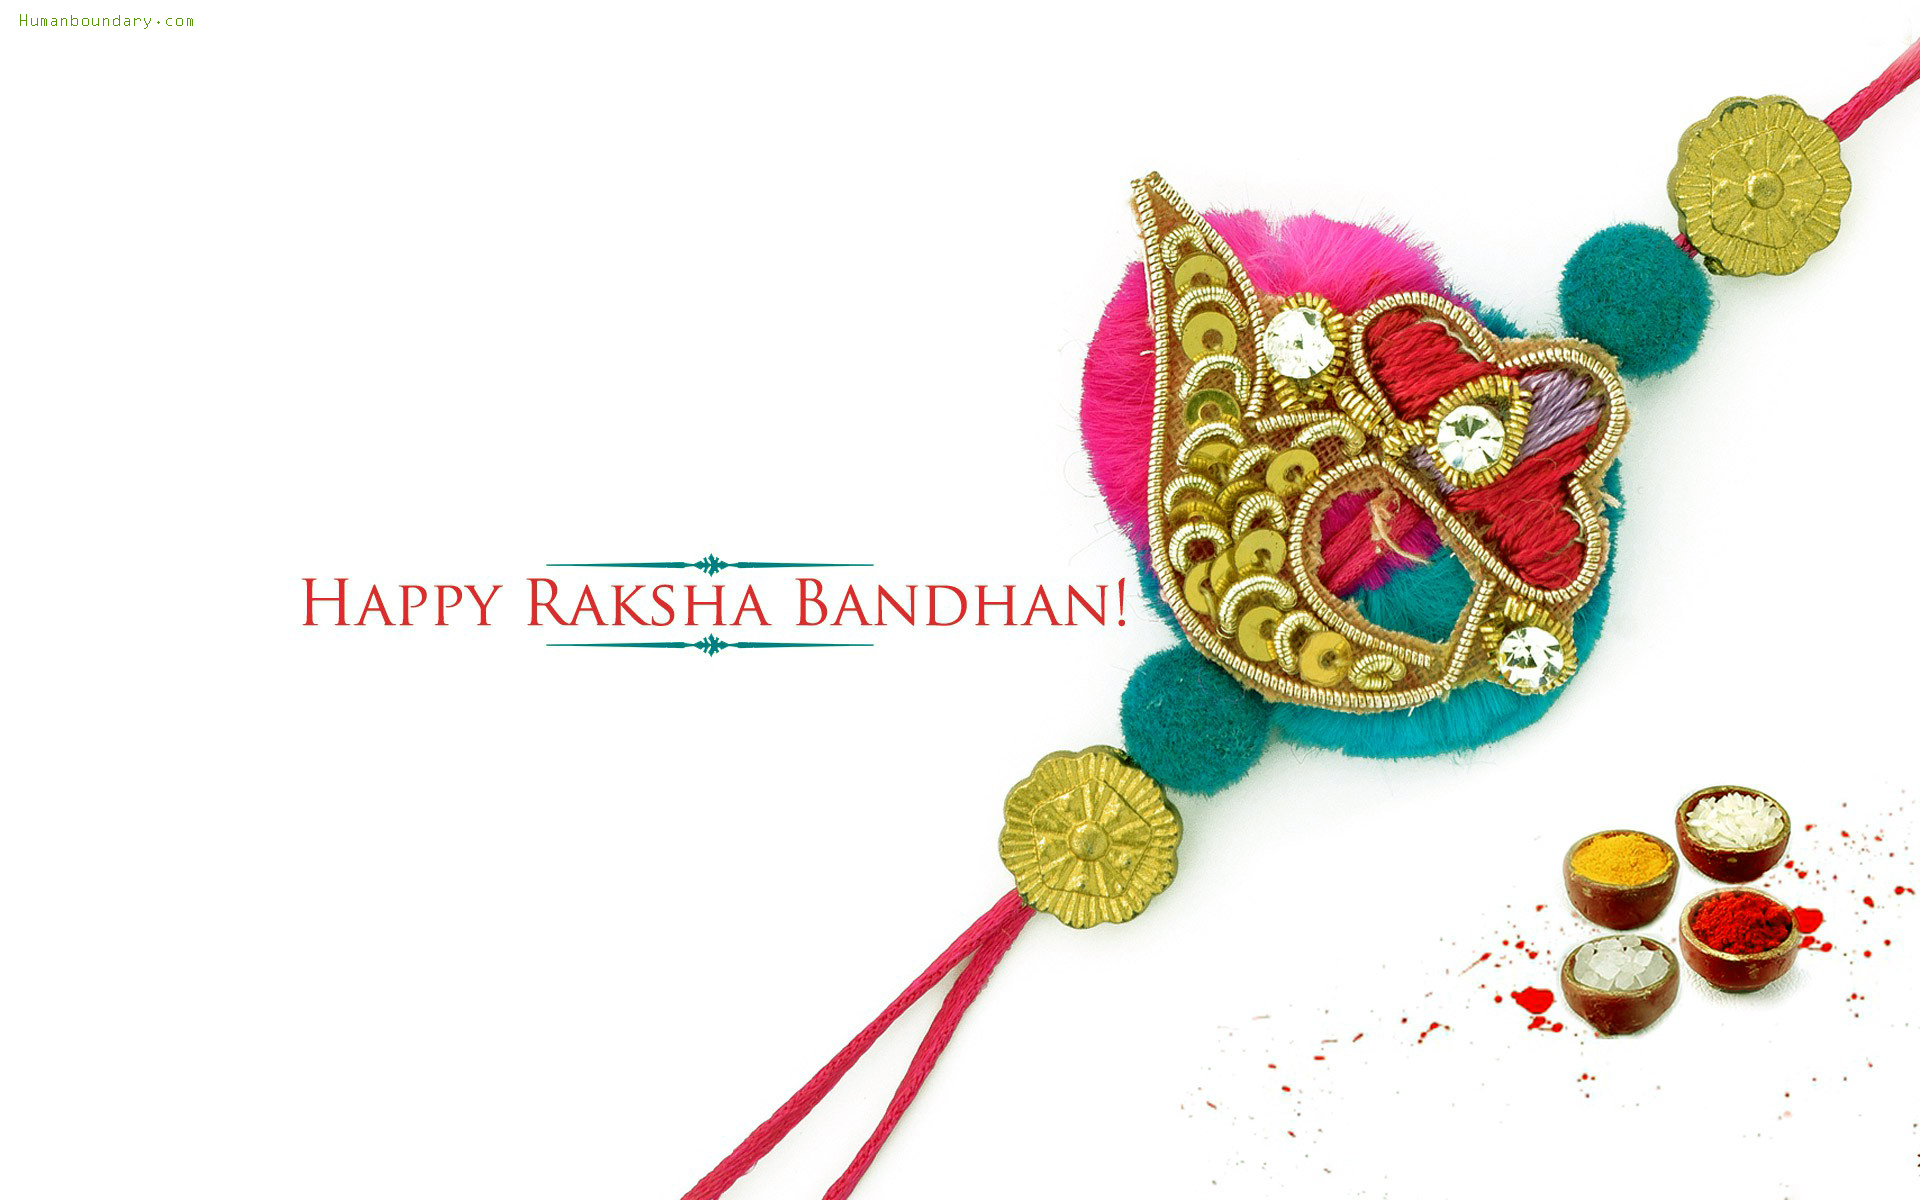 Raksha Bandhan Rakhi images, pictures 2015